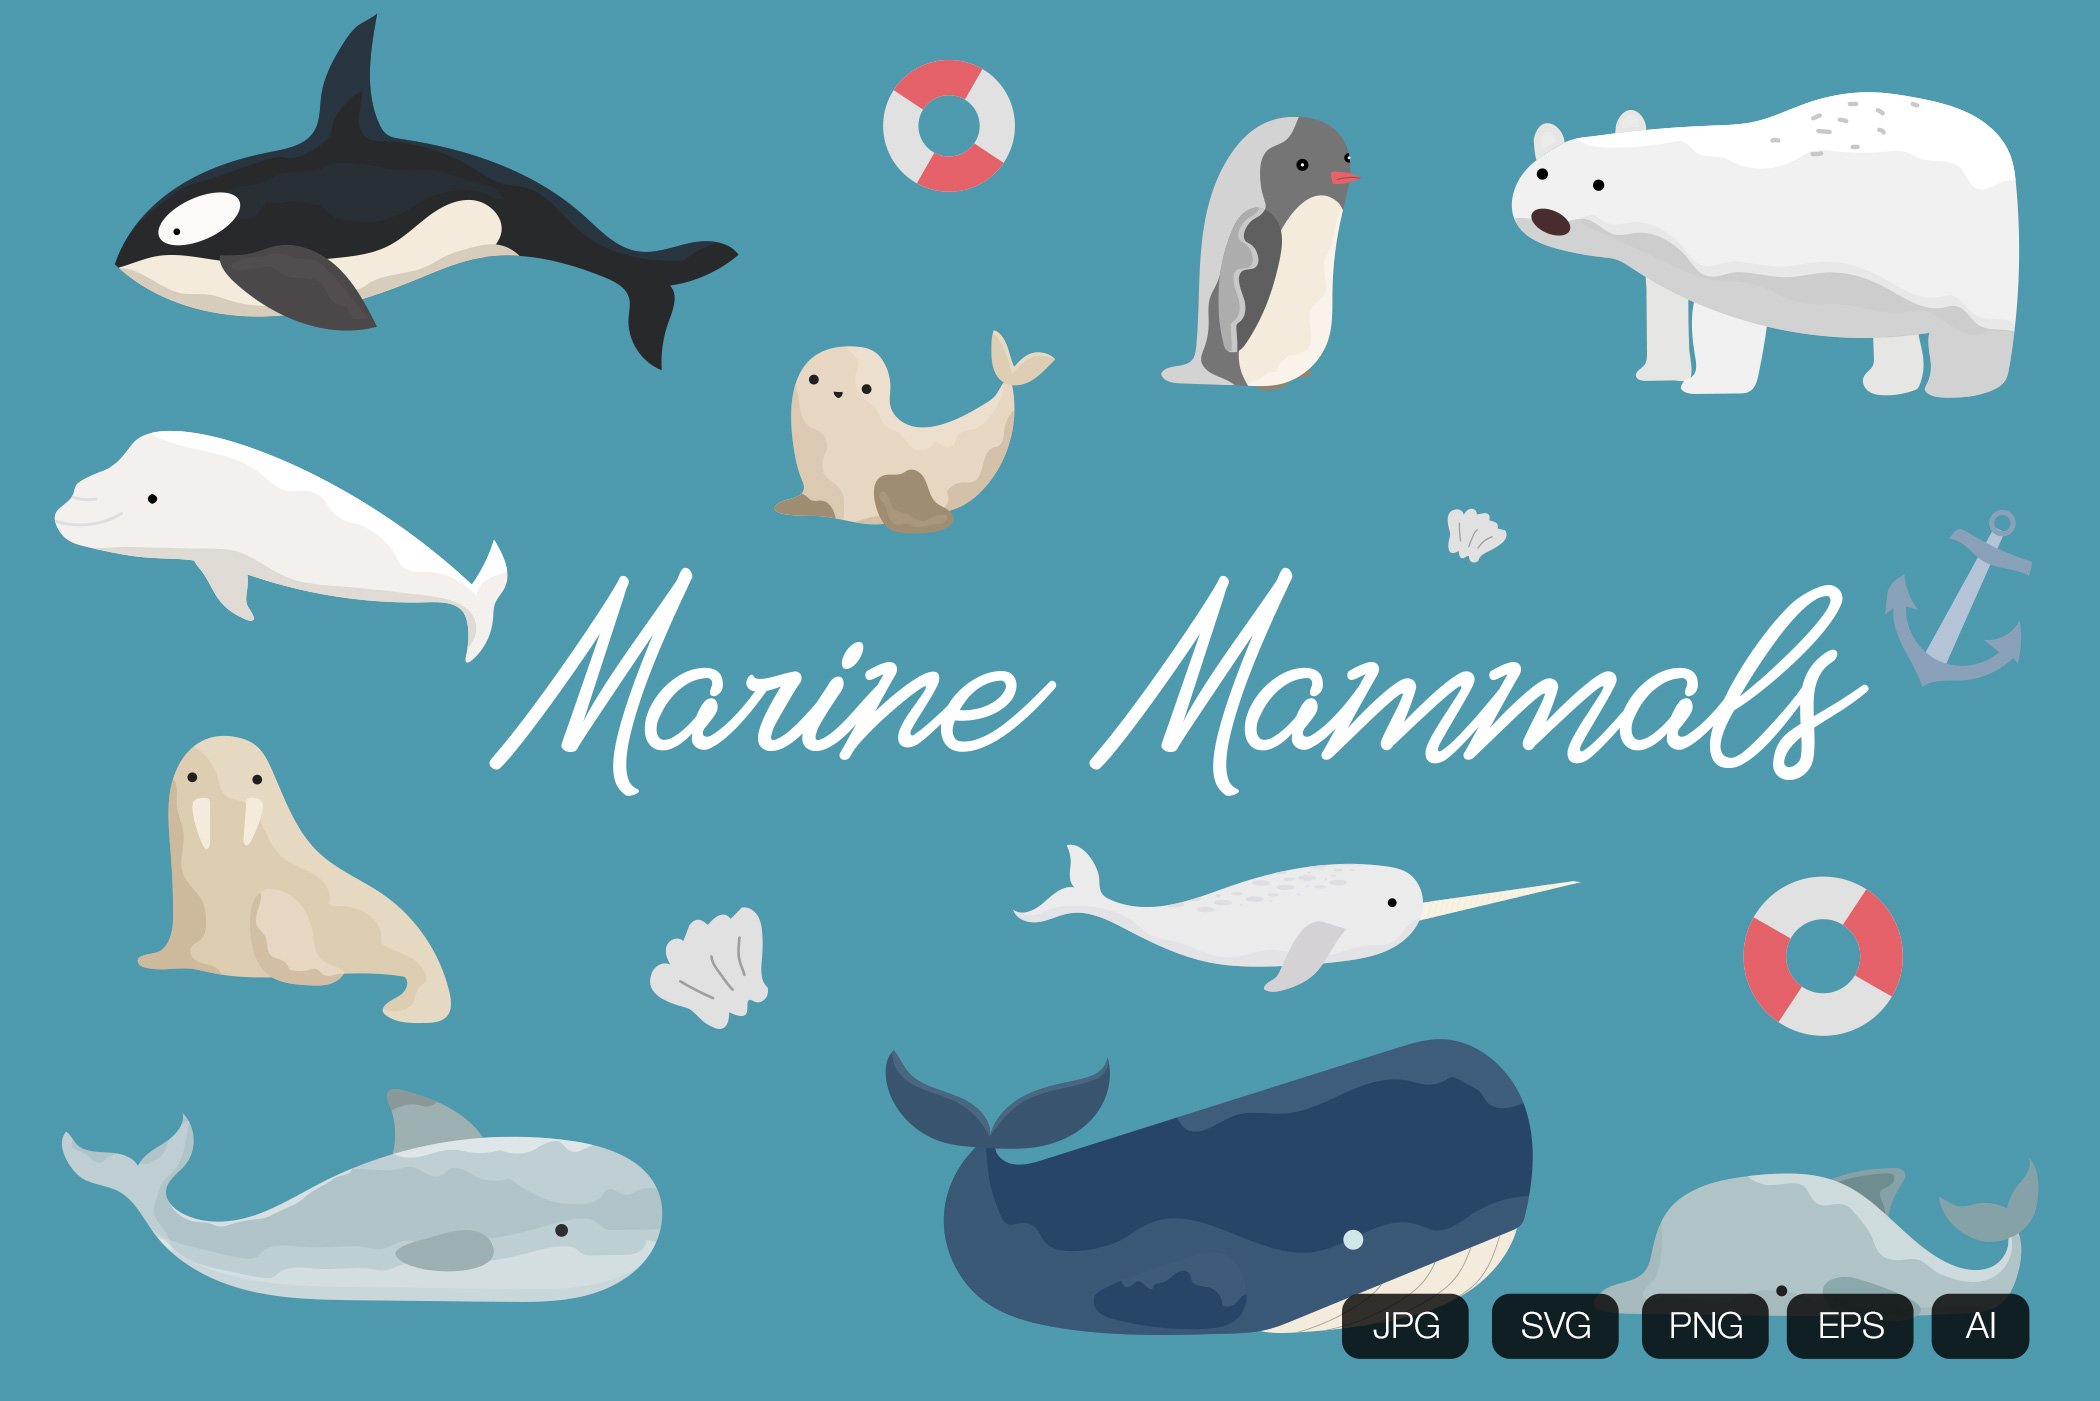 10 Marine Mammals Hand Drawn cover image.